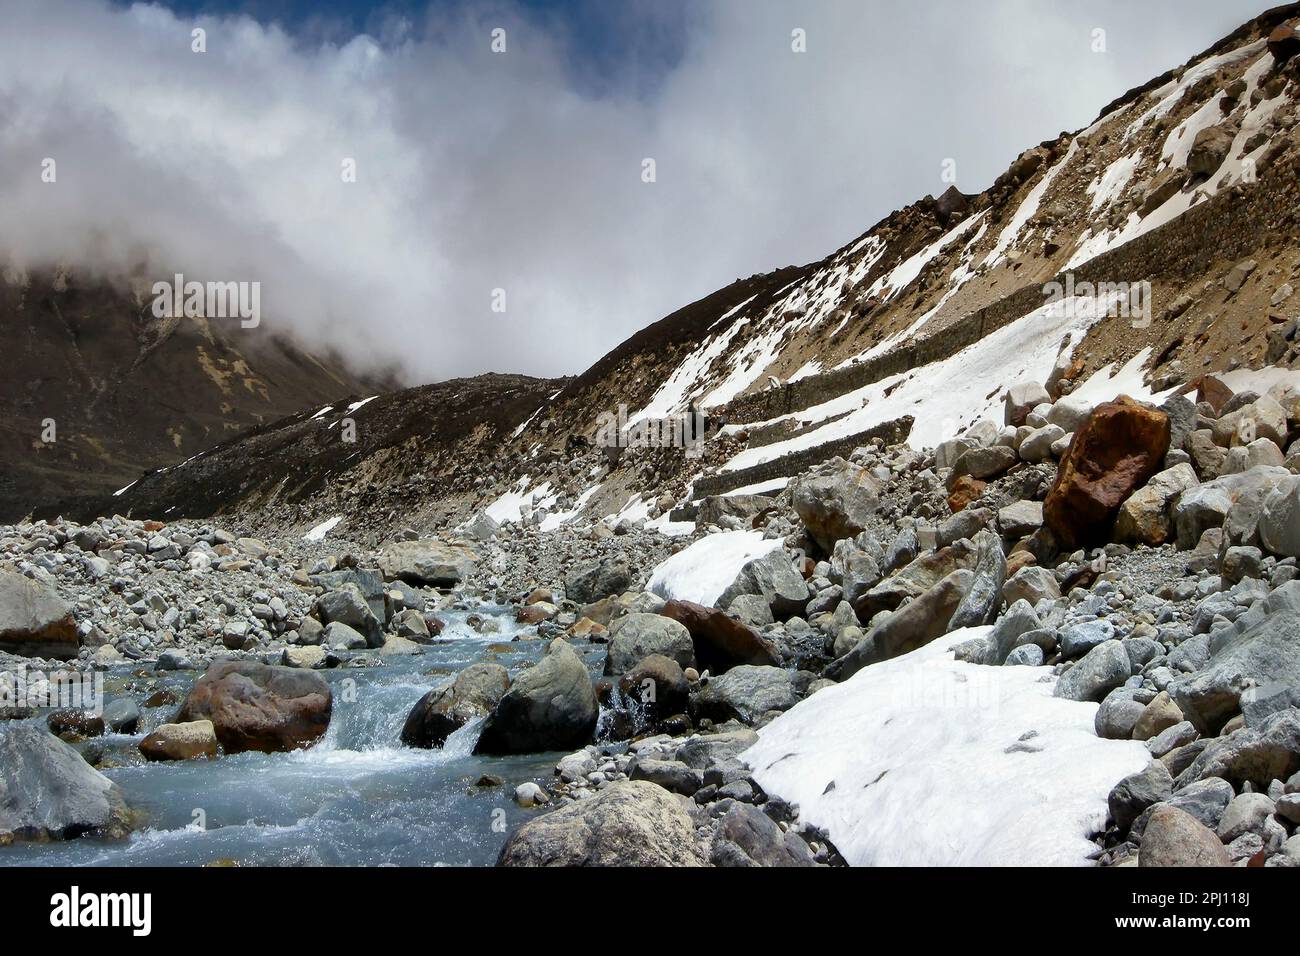 La rivière froide de Lachung qui coule du glacier à Yumesamdong, point zéro, Sikkim, Inde. Altitude de 15 300 pieds, dernier avant-poste de la civilisation. Banque D'Images